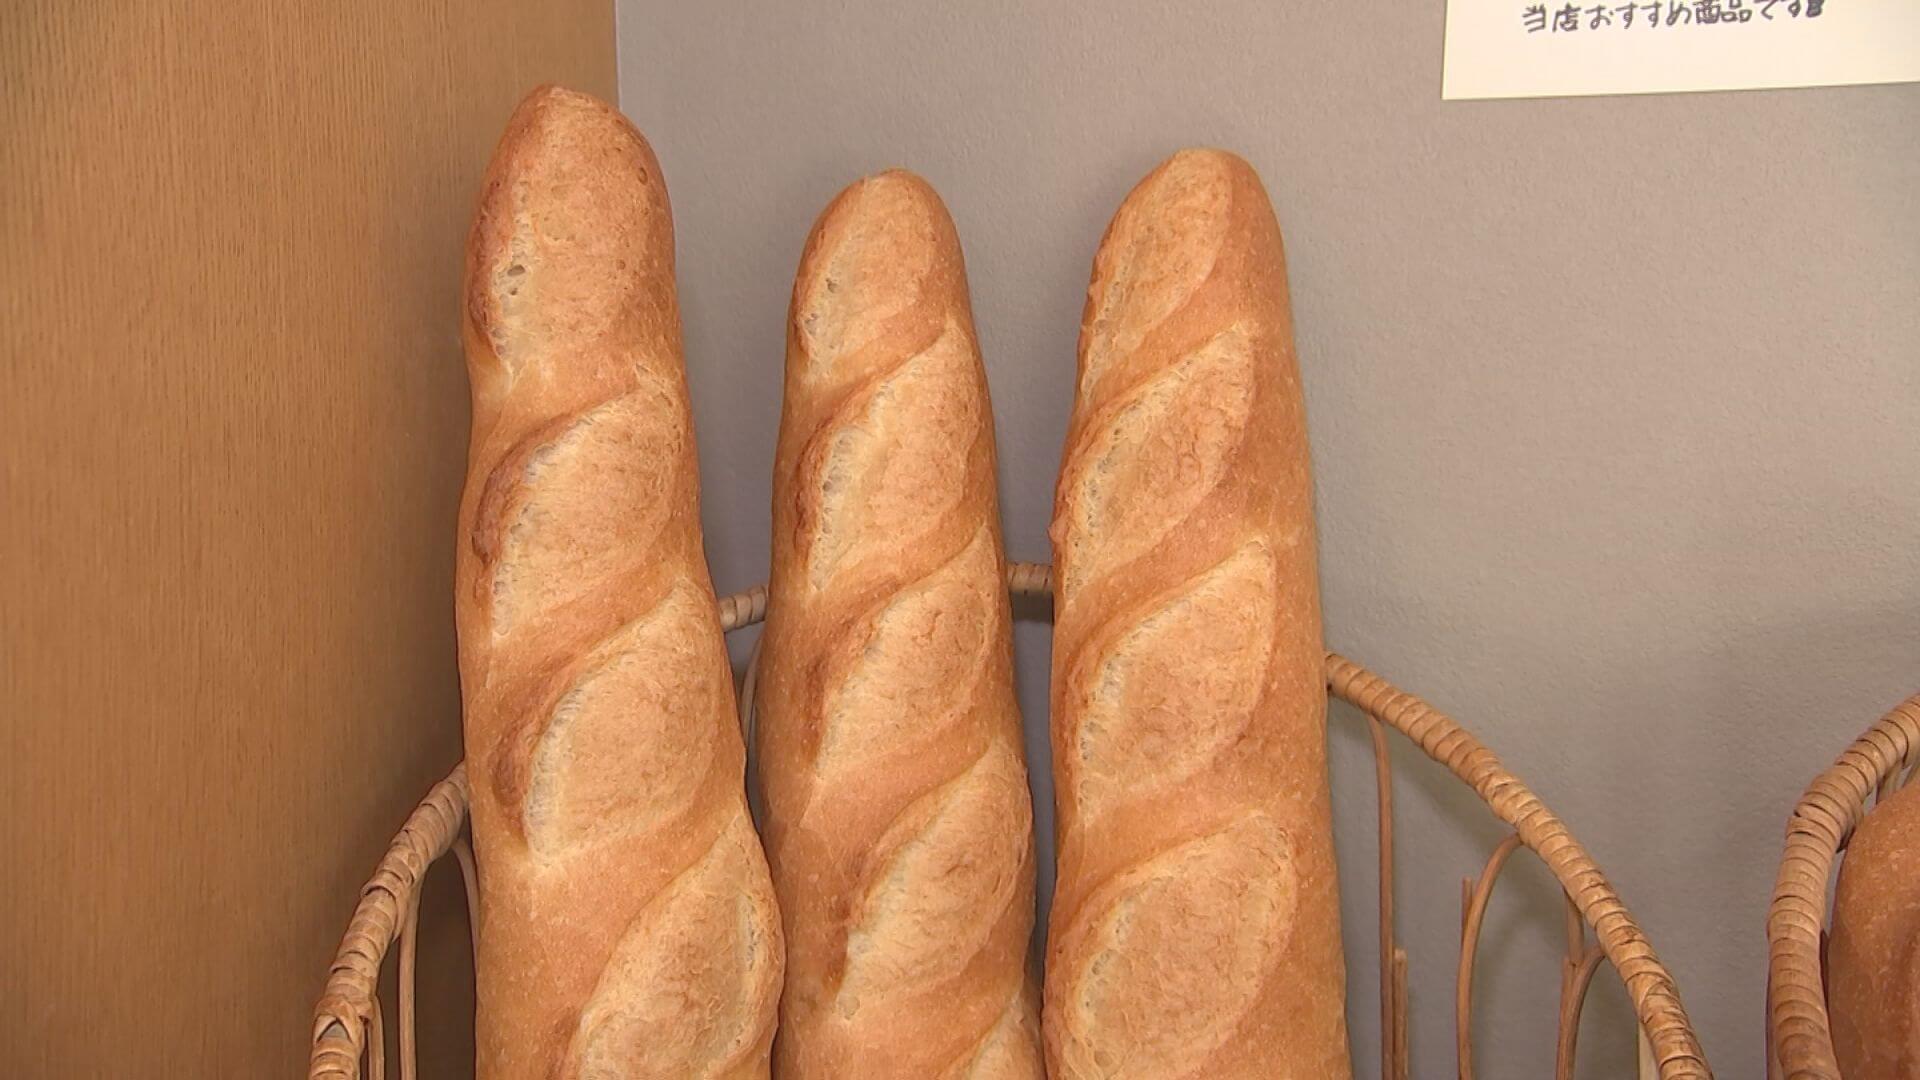 およそ5時間発酵させ作られるフランスパンは人気商品